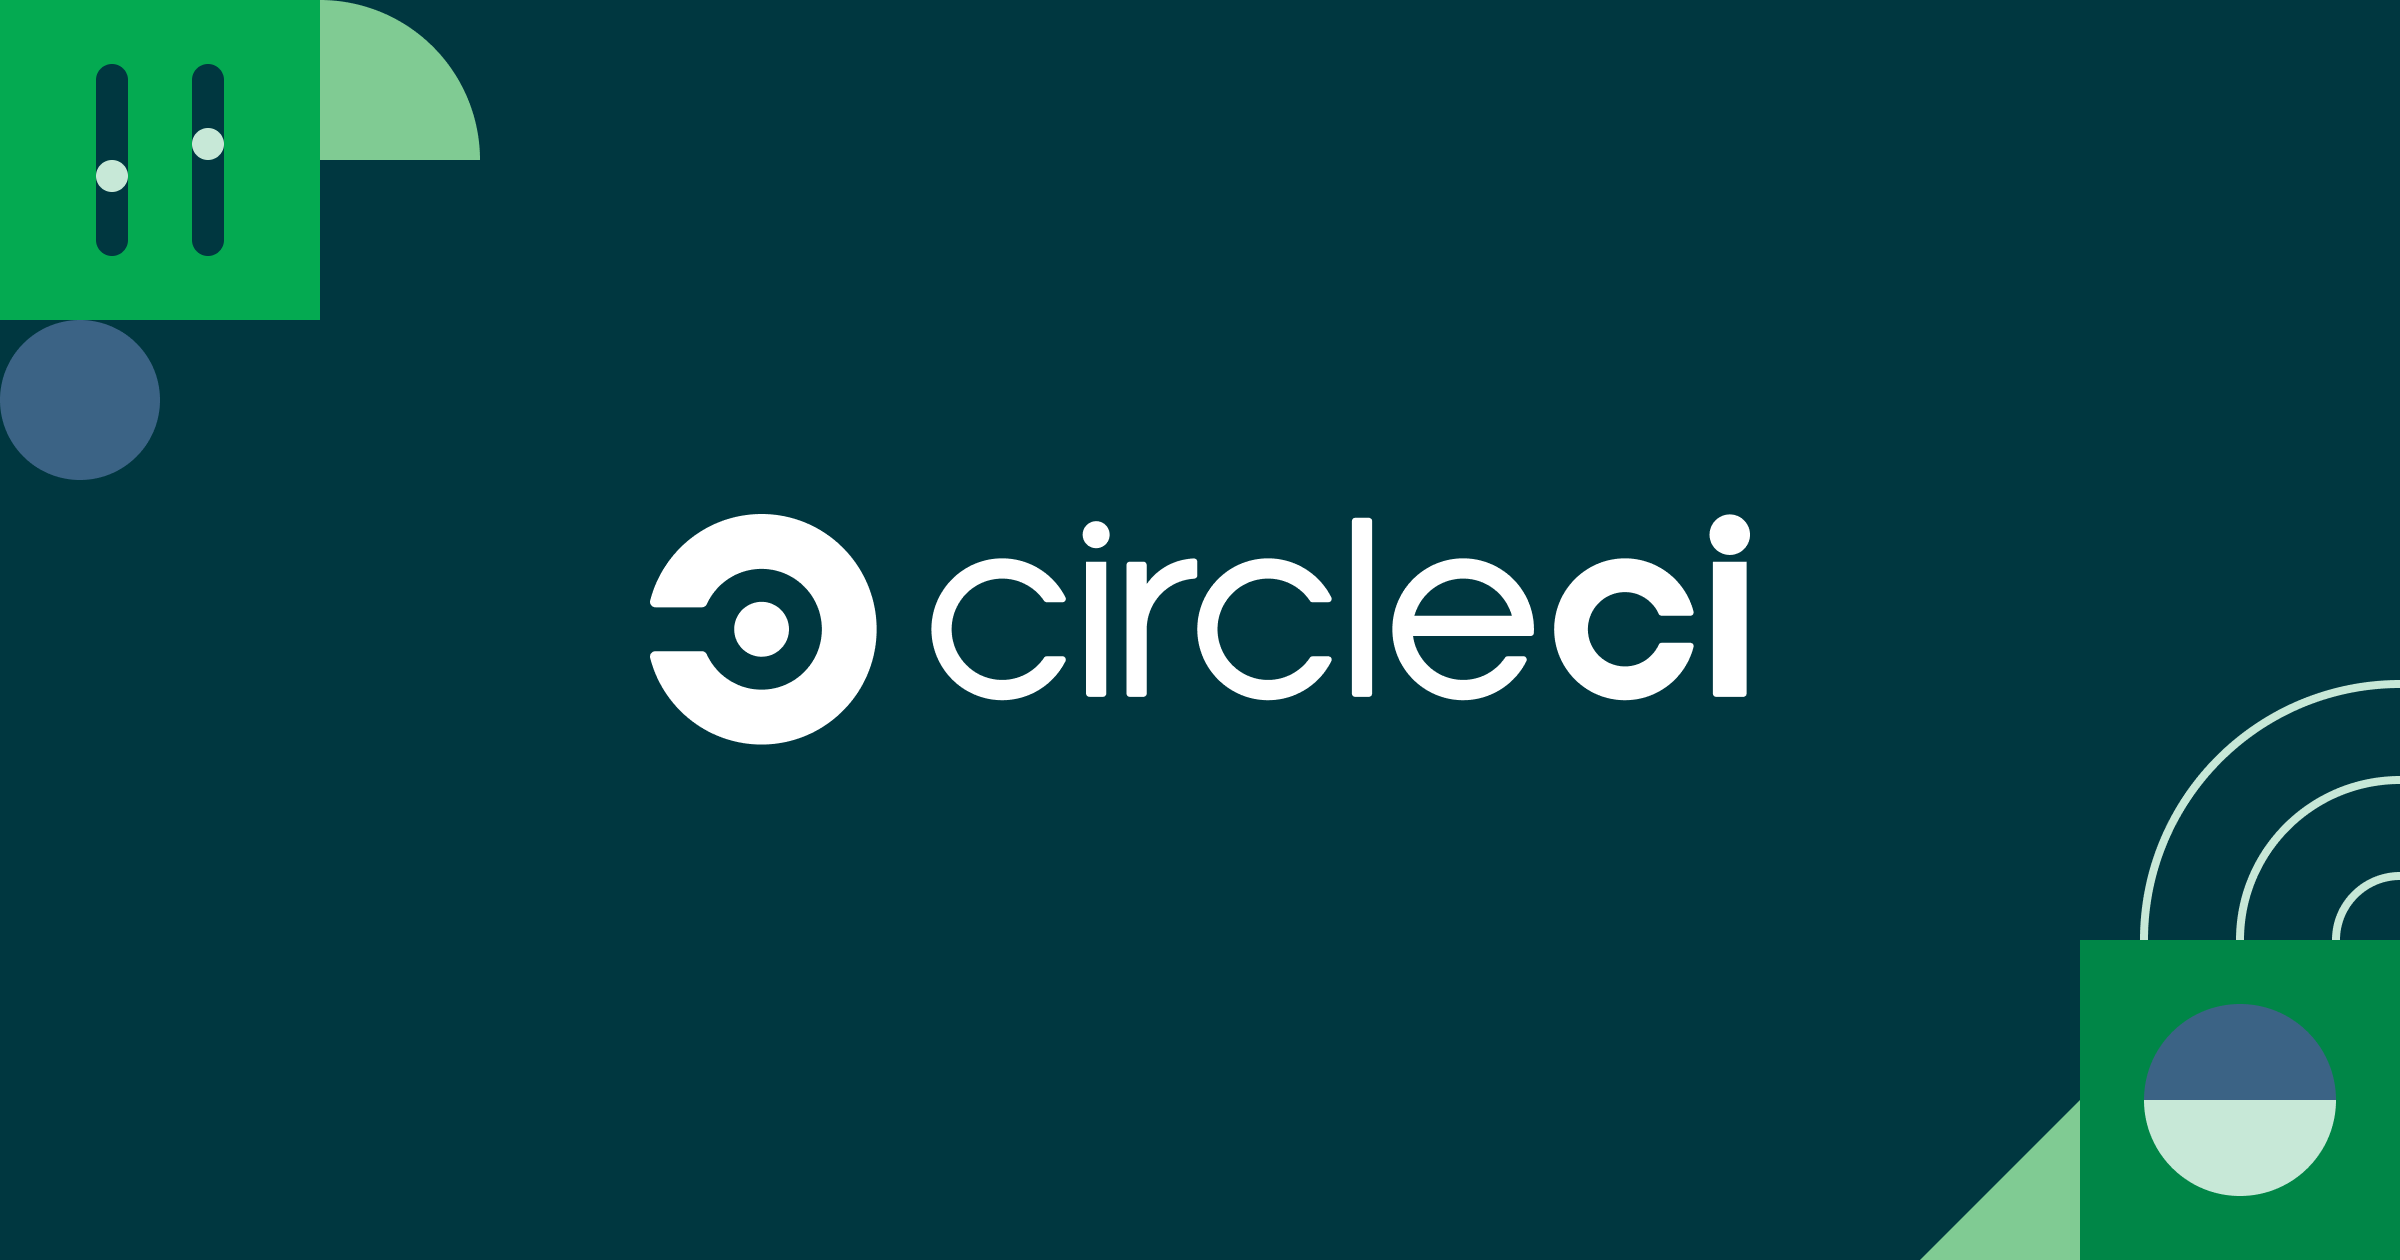 circleci.com